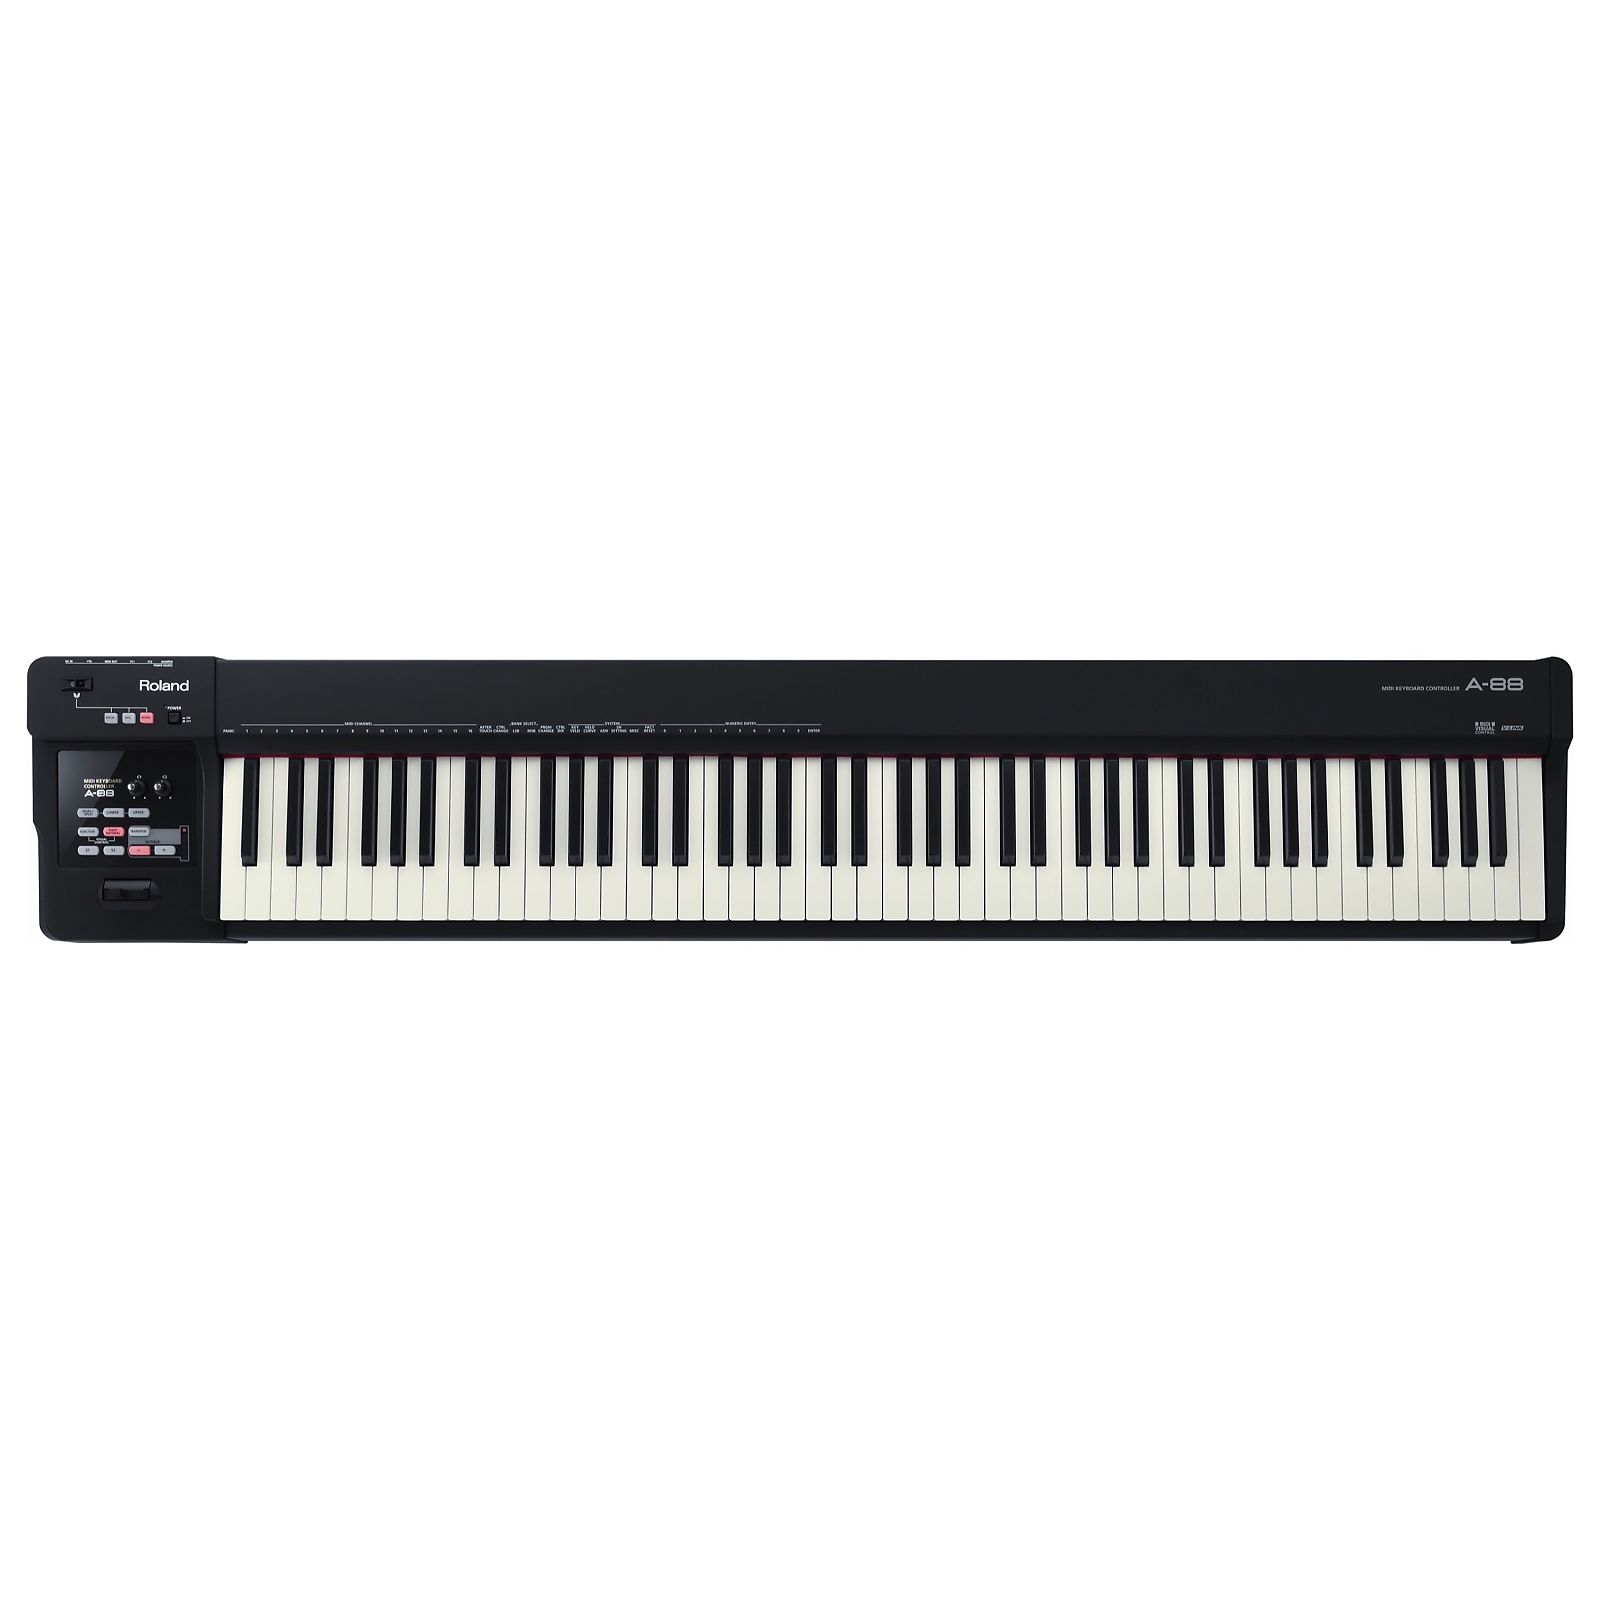 独特の上品 鍵盤楽器 Roland Controler Midi A-88 鍵盤楽器 